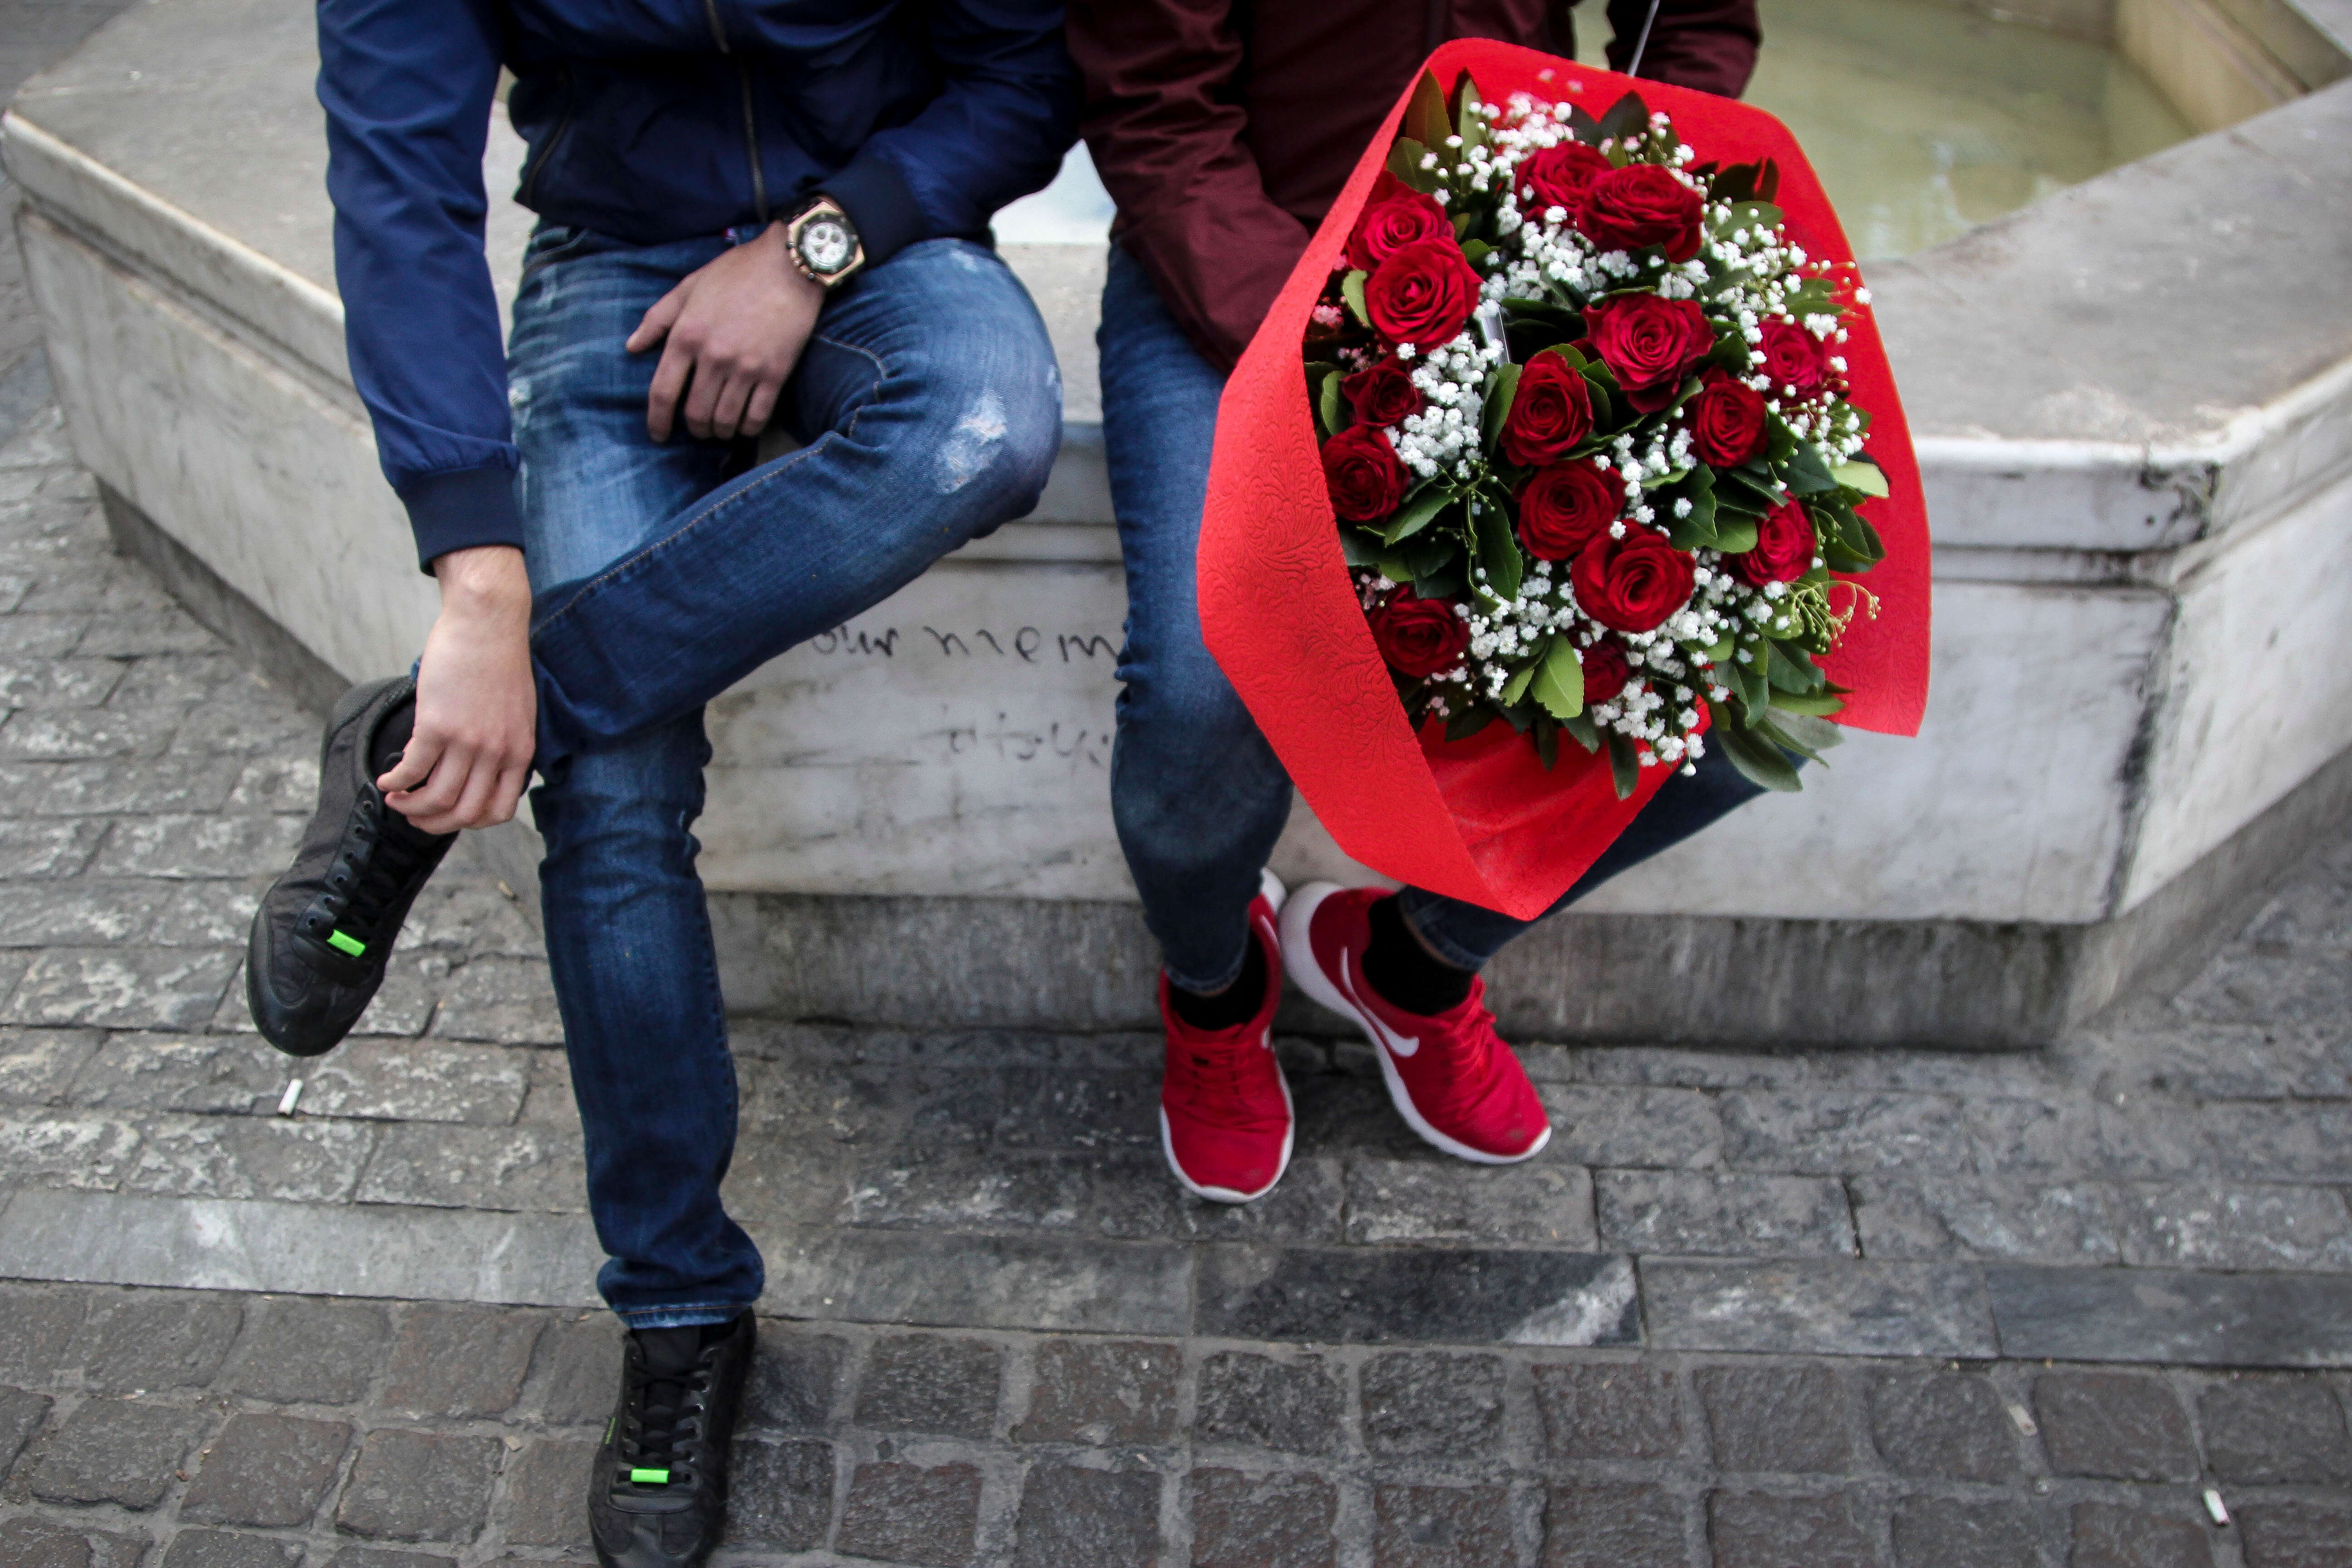 Θεσσαλονίκη: Με κόκκινα τριαντάφυλλα και πάστες σε σχήμα καρδιάς γιορτάστηκε ο Άγιος Βαλεντίνος